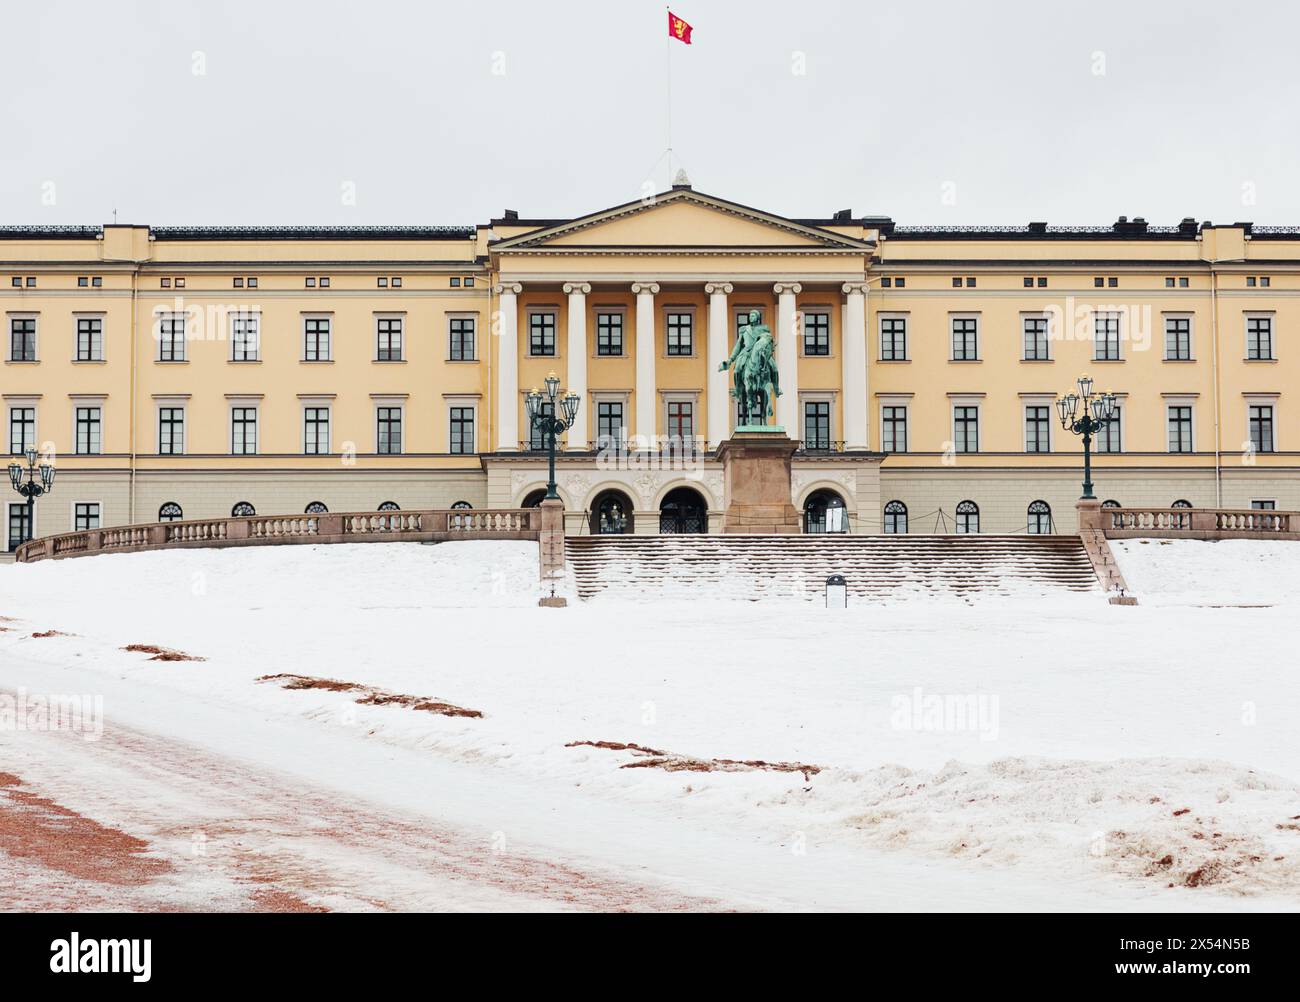 Facciata del palazzo reale neoclassico di Oslo in inverno con volo standard reale norvegese e statua equestre del re Carl Johan, Oslo, Norvegia Foto Stock